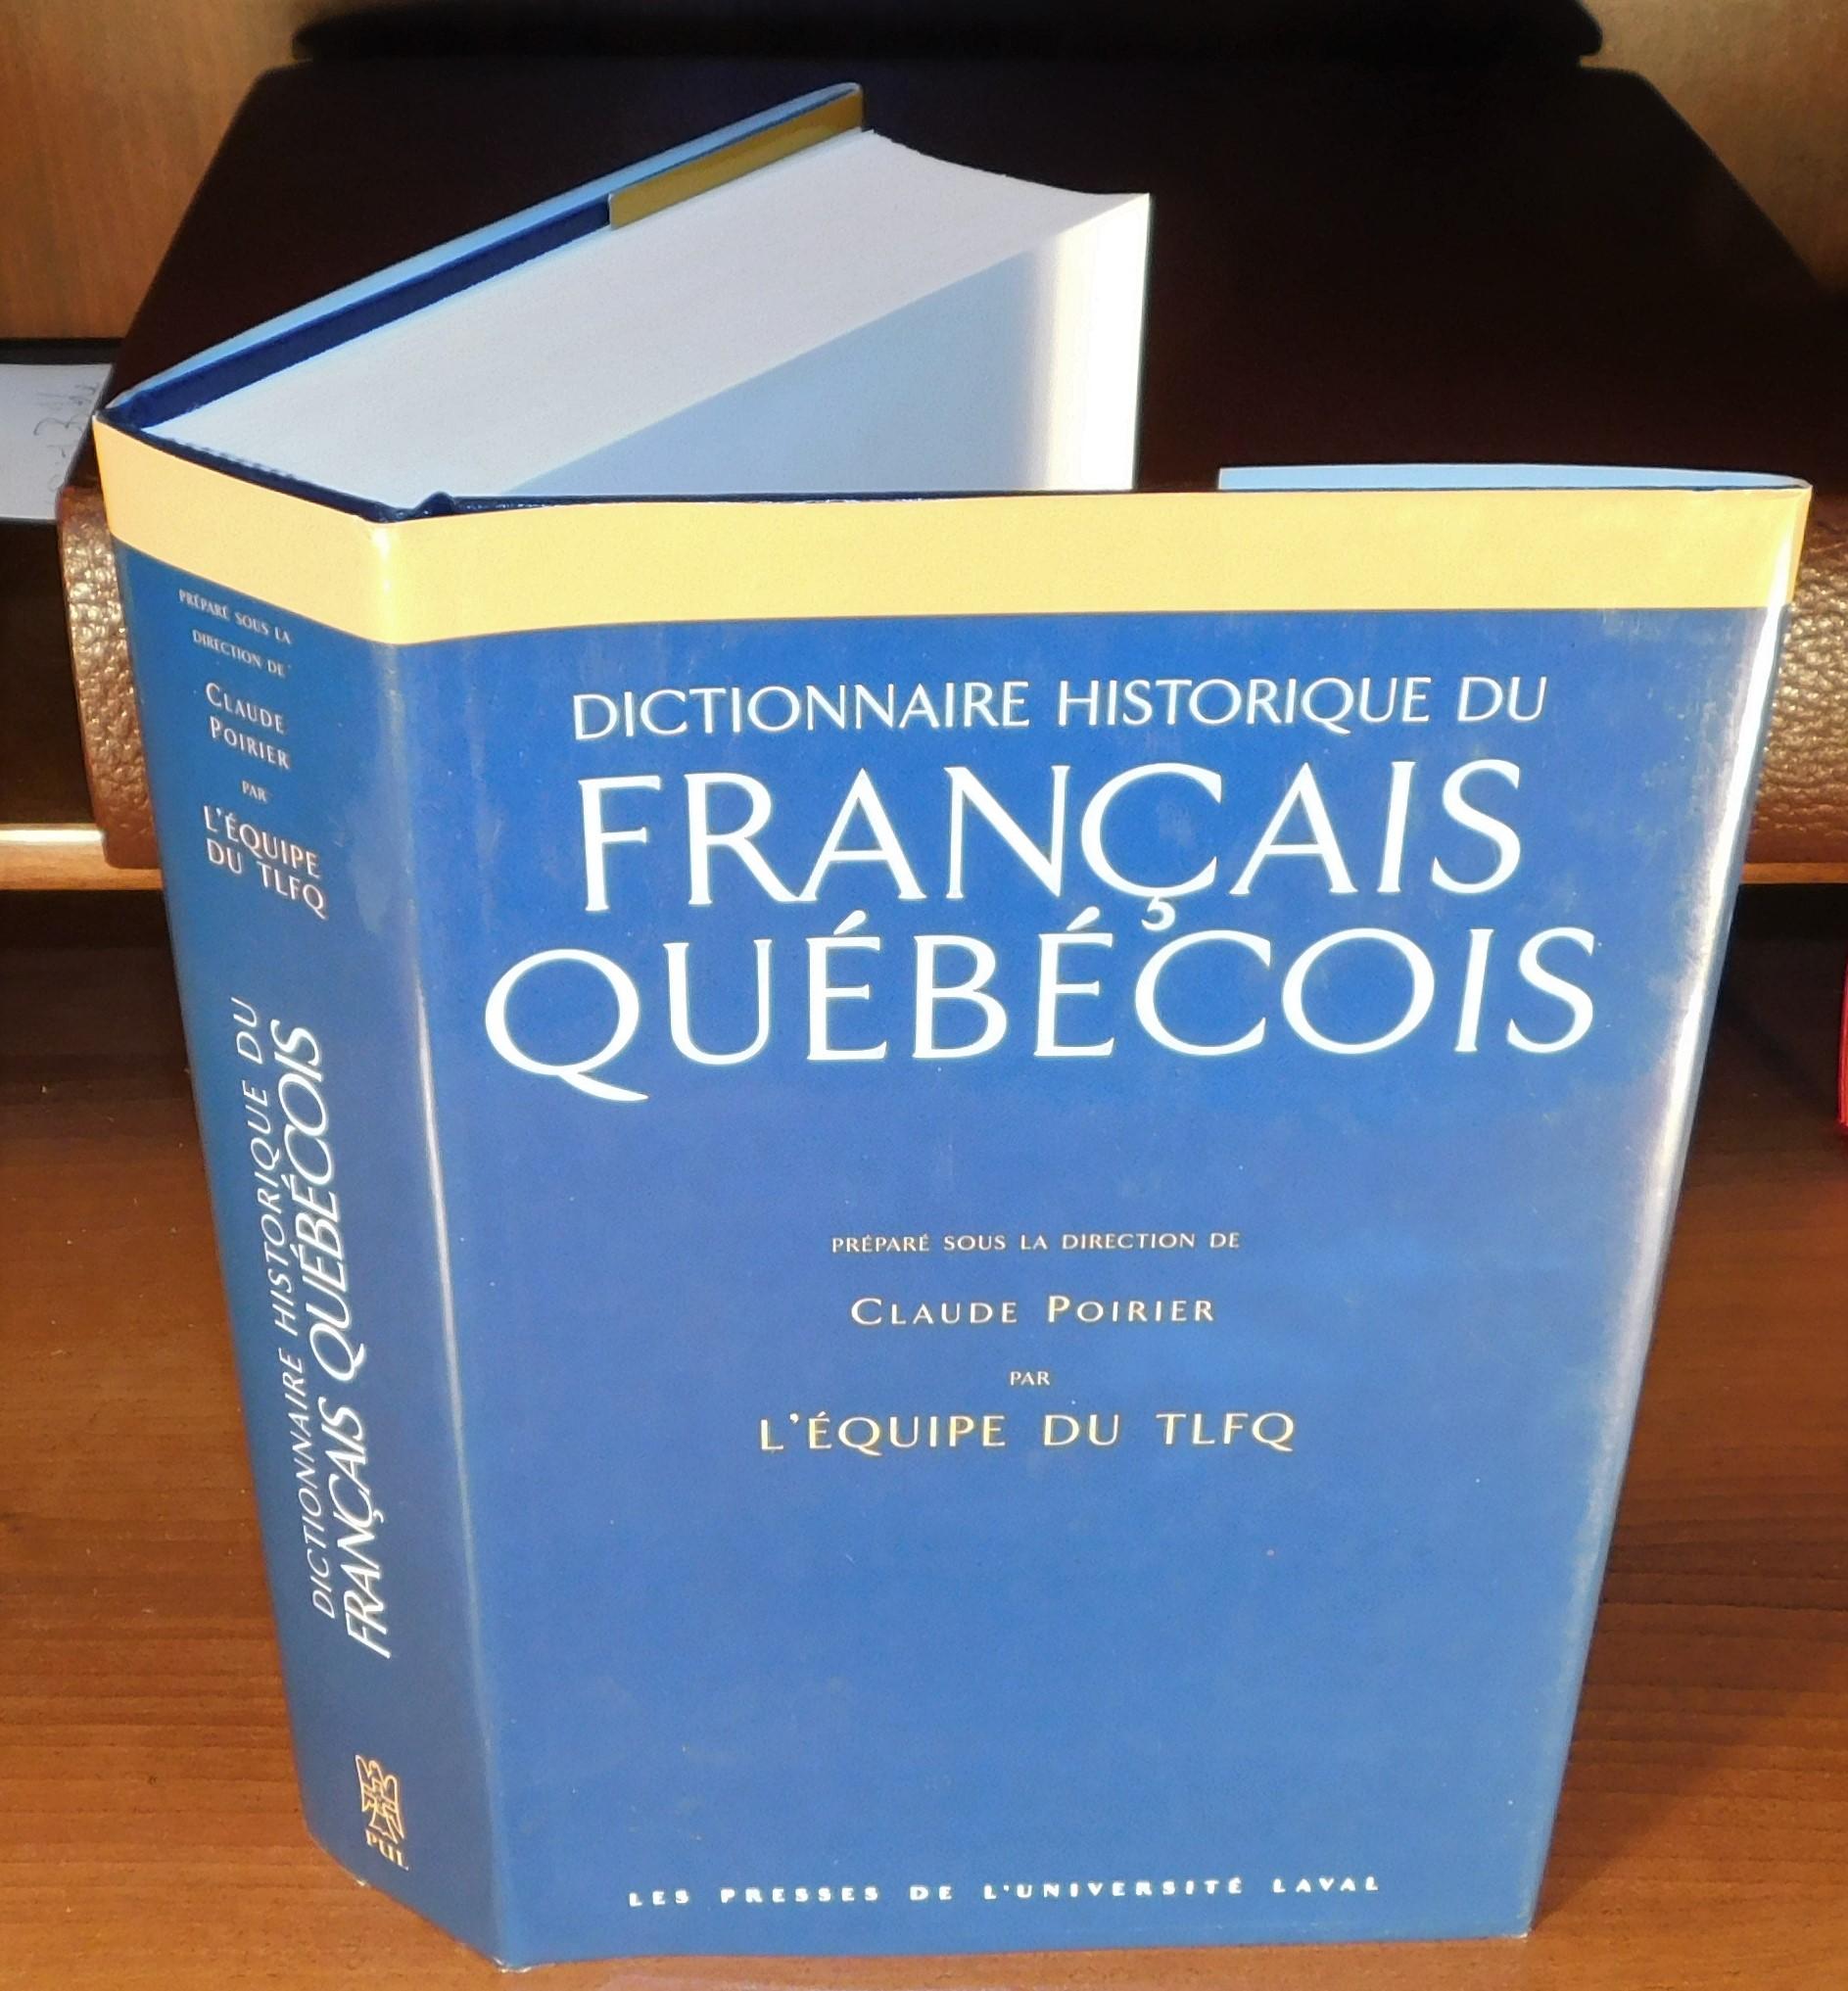 DICTIONNAIRE HISTORIQUE DU FRANÇAIS QUÉBÉCOIS Monographies lexicographiques  de québécismes by POIRIER, Claude (sous la direction de): Très bon  Couverture rigide (1998) | Librairie Montréal